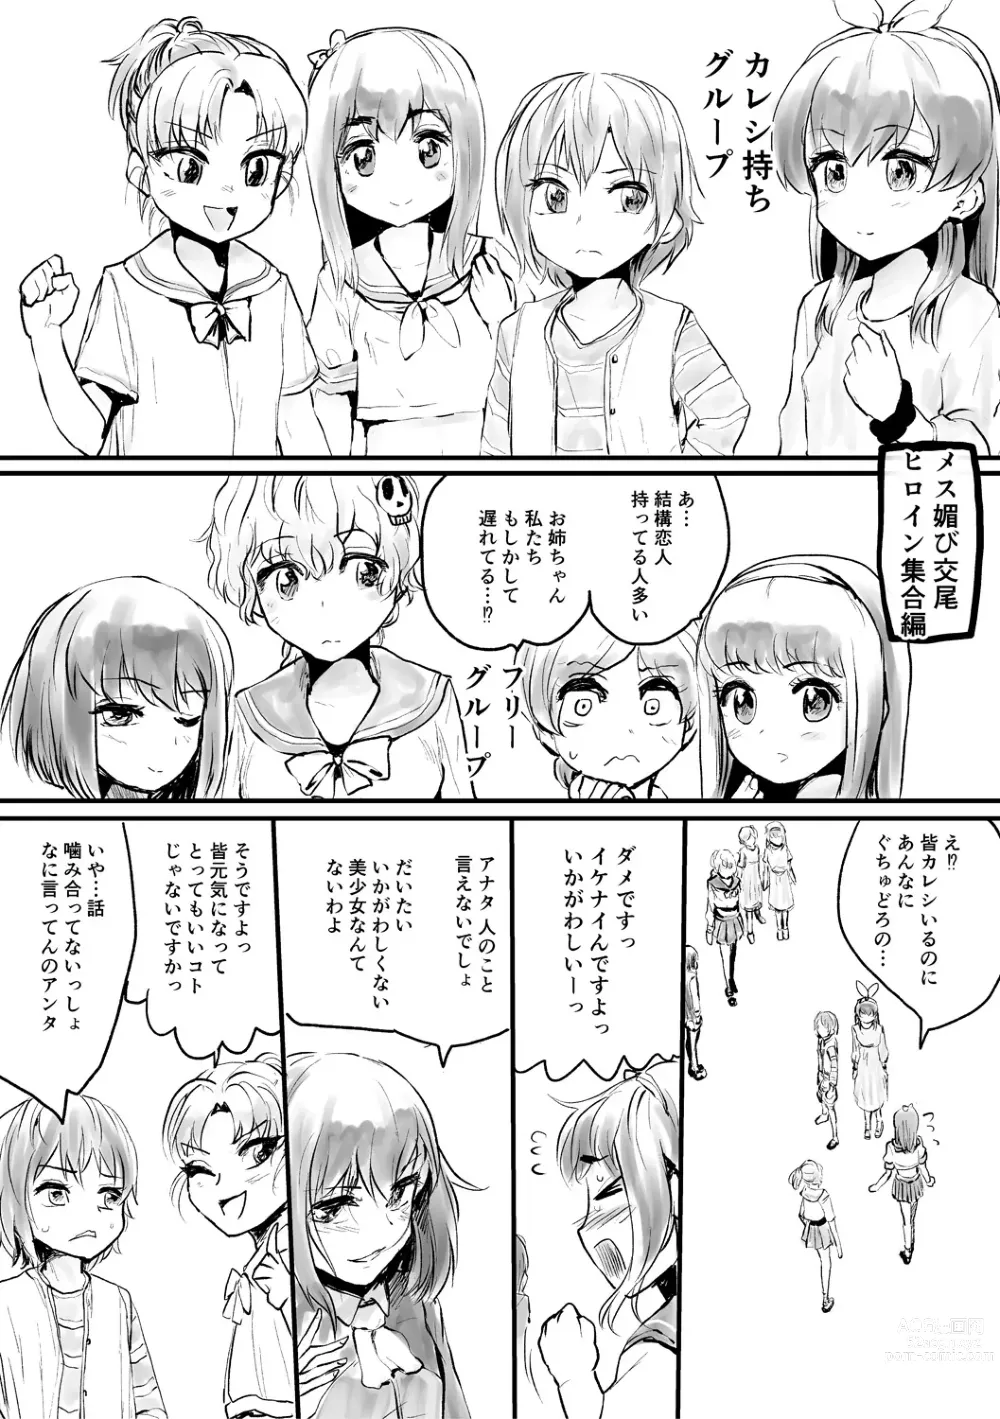 Page 204 of manga Mesu Kobi koubi Osu Bou-sama-tachi ni Kansha no Koshi Furi